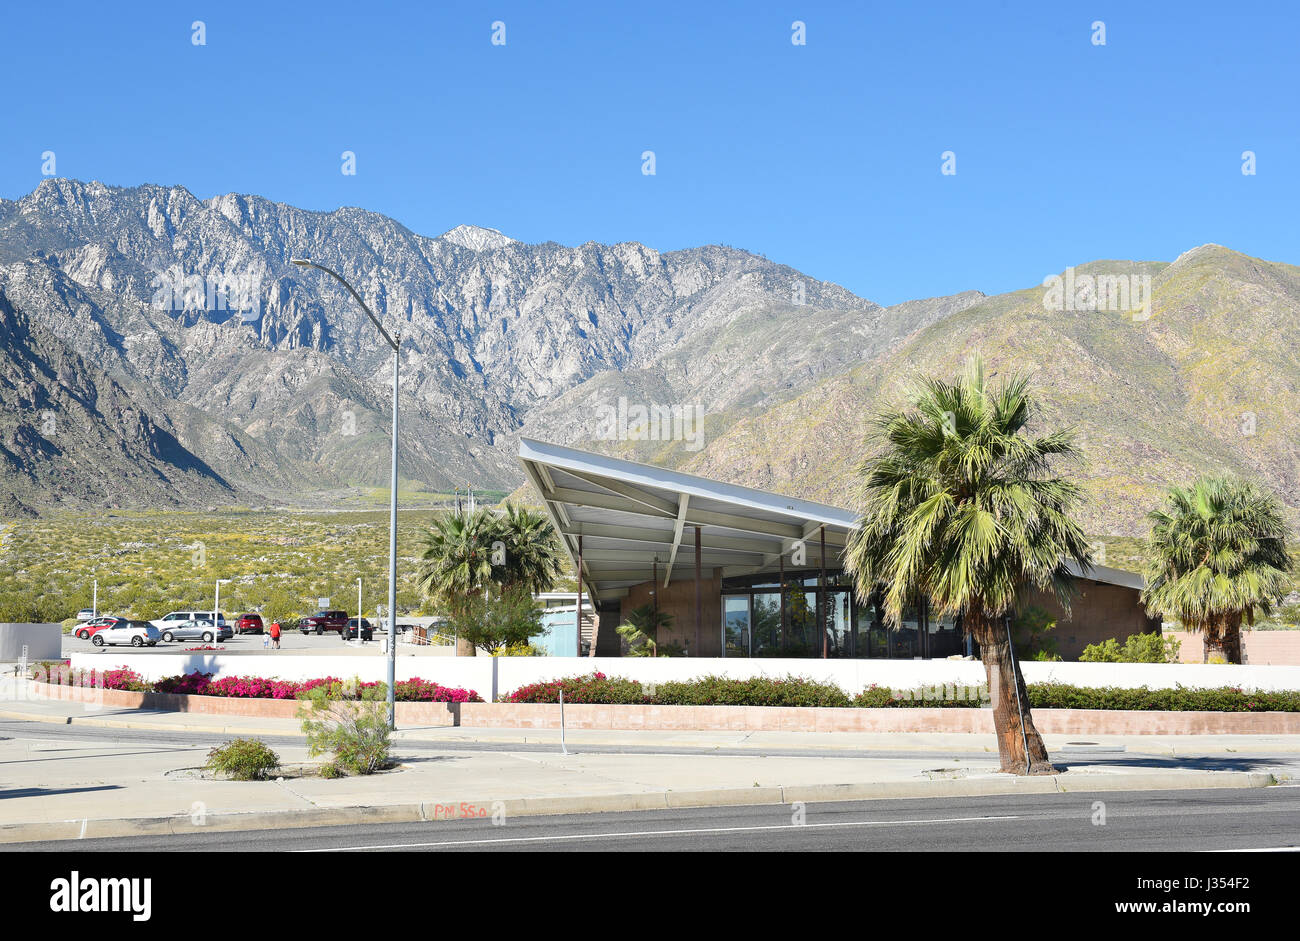 PALM Springs, CA - MARZO 24, 2017: tram Stazione di gas, Palm Springs. La stazione costruita nel 1965 serve ora come Palm Springs Visitor Center. Foto Stock